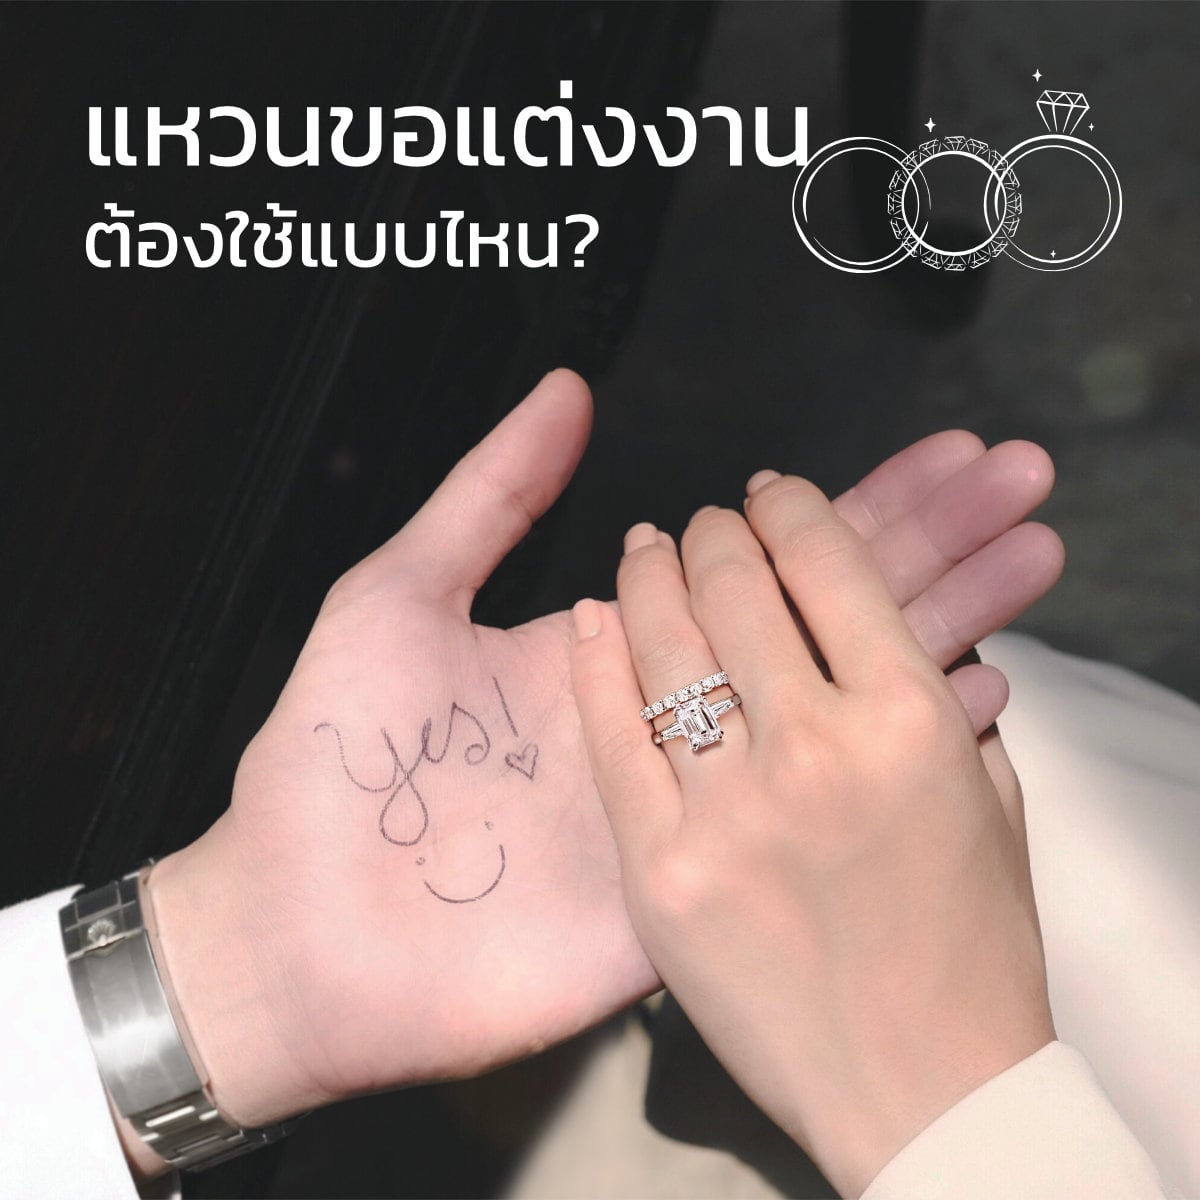 แหวนขอแต่งงาน ต้องใช้แบบไหน ขอแฟนแต่งงานใช้แหวนกี่วง? - Der Mond